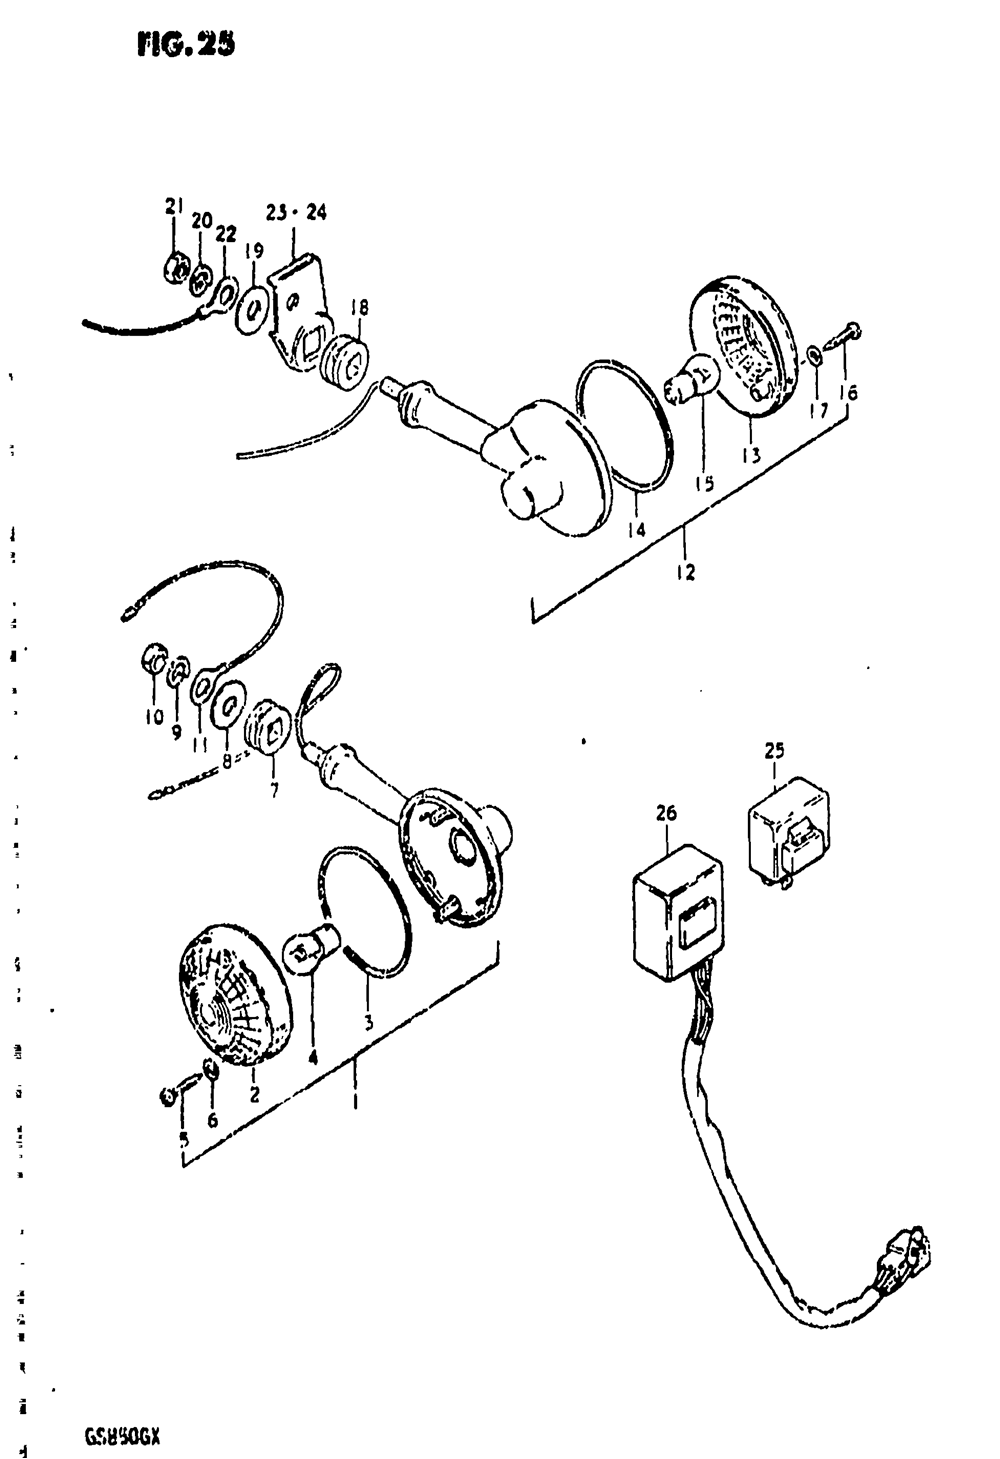 Turn signal lamp (gs850gt)